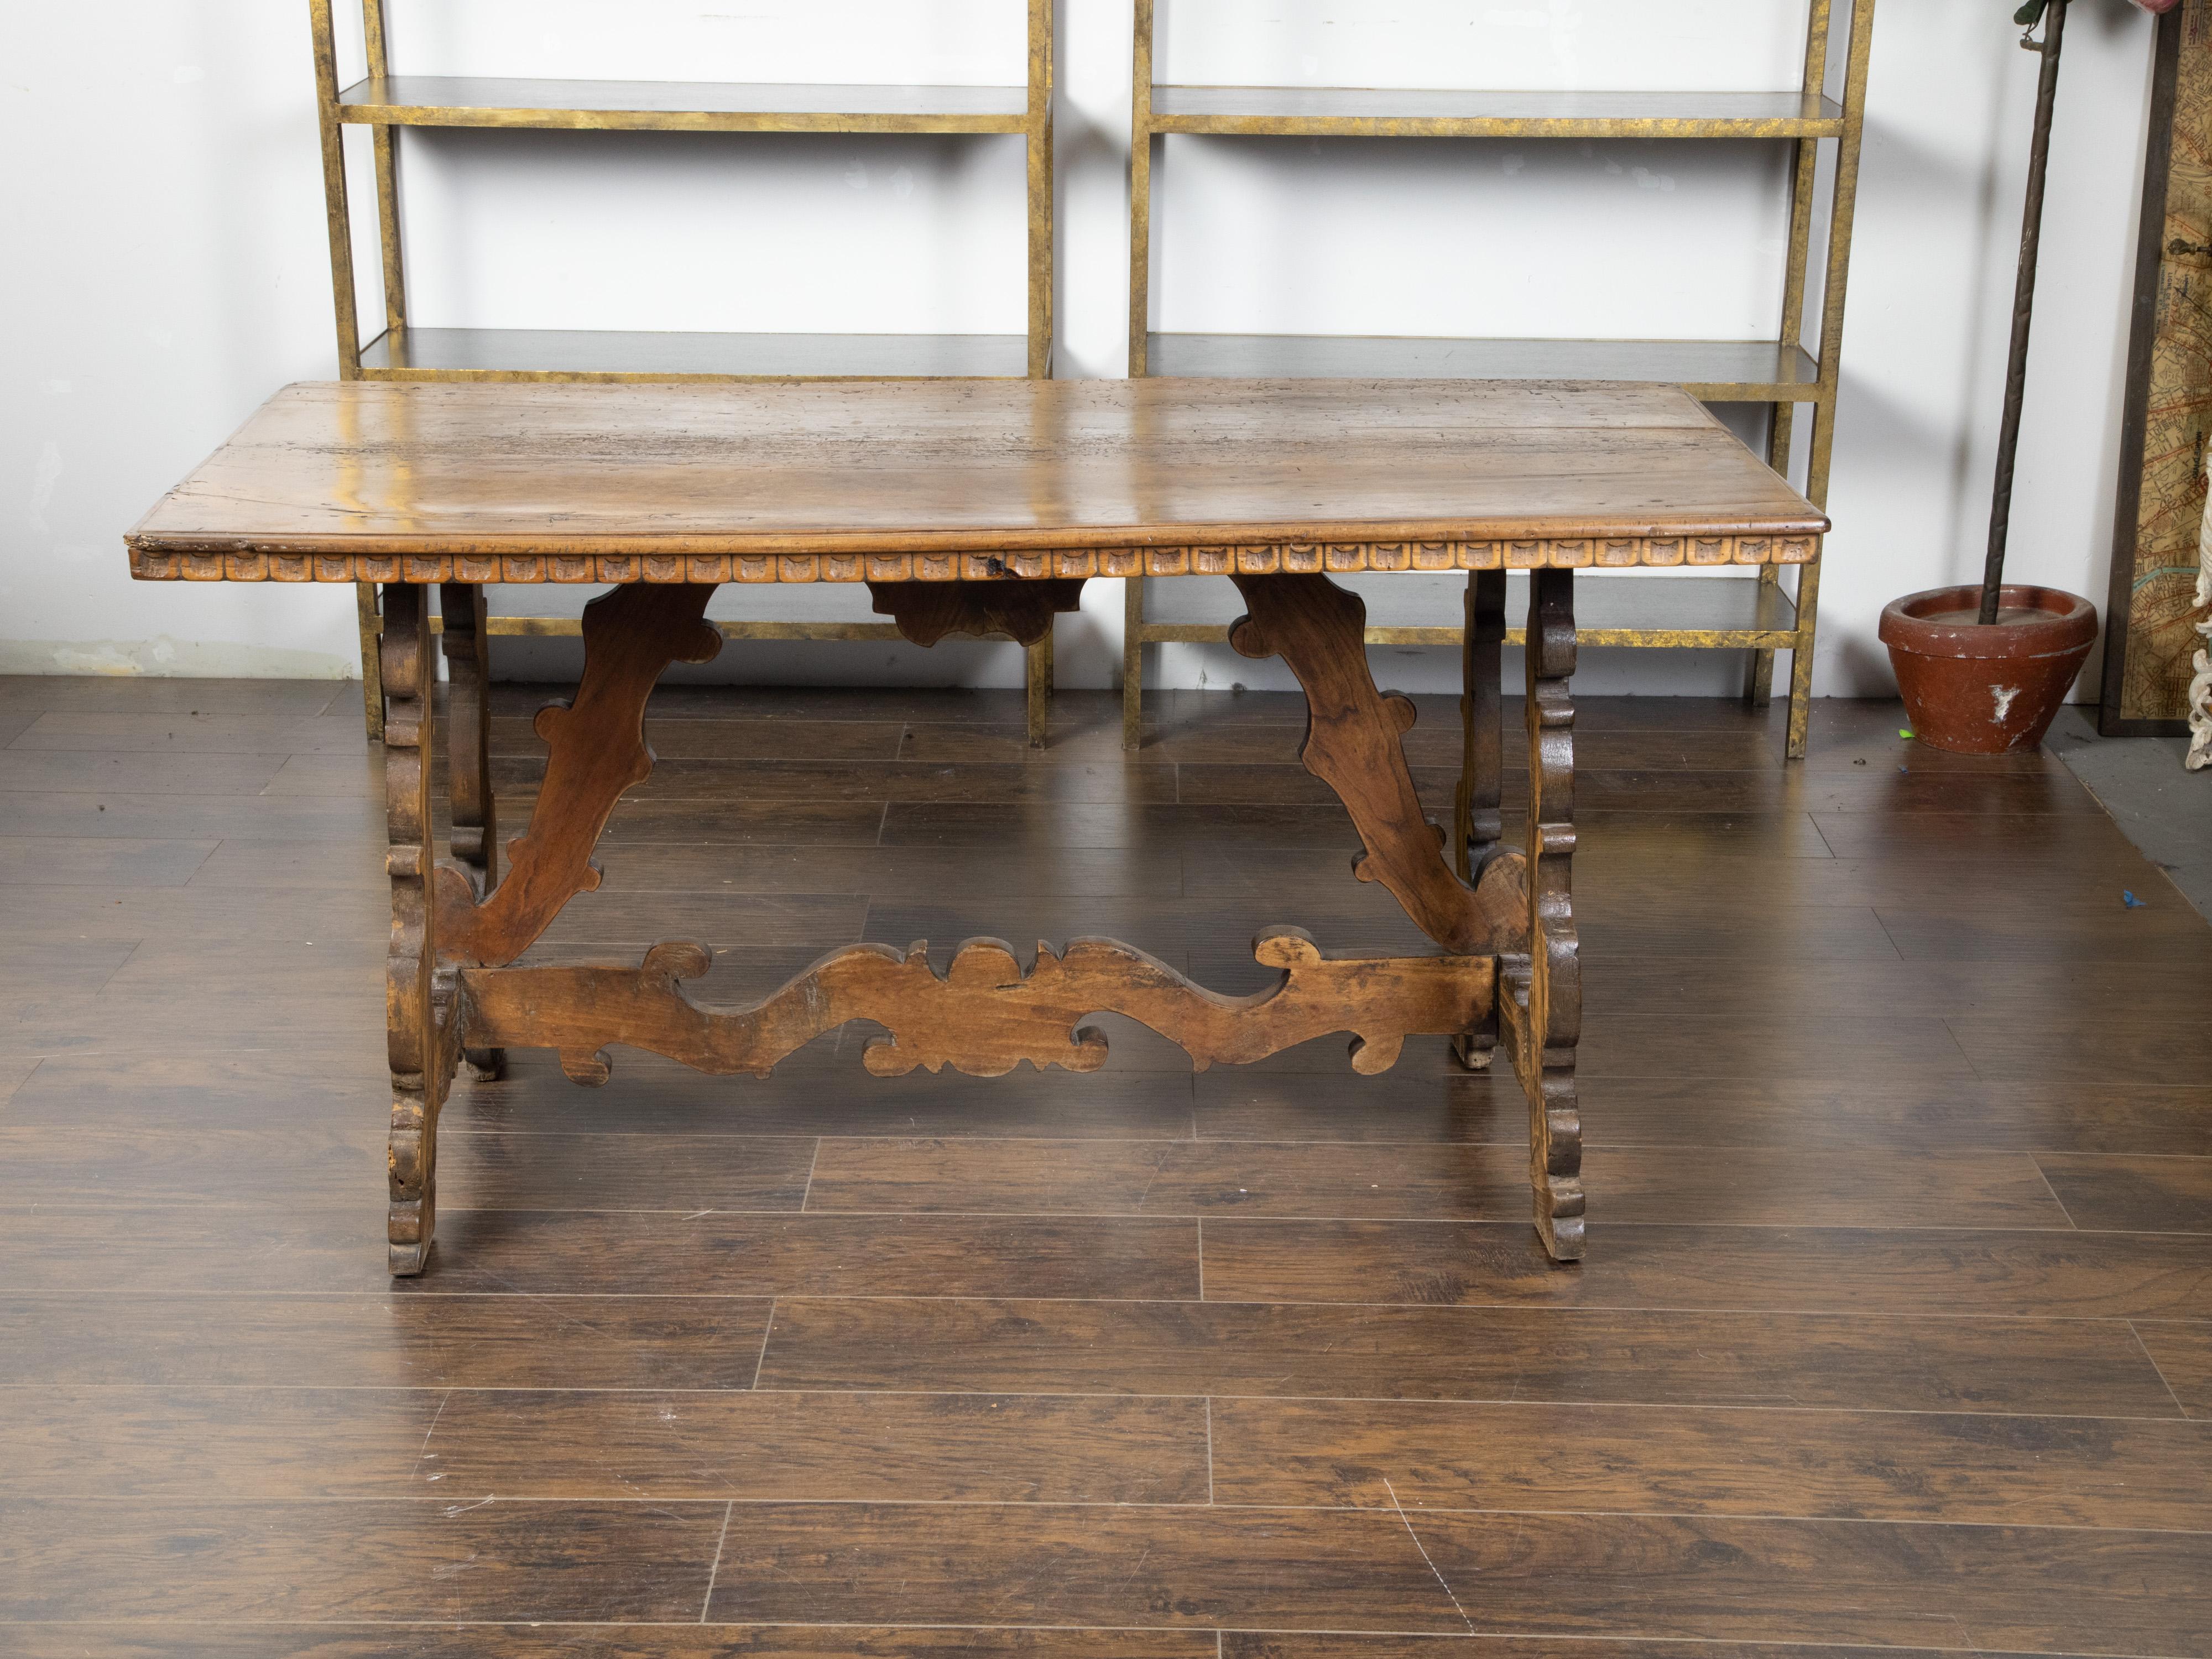 Italienischer Nussbaumtisch im Barockstil aus dem 19. Jahrhundert mit geschnitztem Gestell und Schaufelmotiven. Dieser Tisch wurde im 19. Jahrhundert in Italien hergestellt und hat eine rechteckige Platte mit geschnitzten Schürzenmotiven, die auf